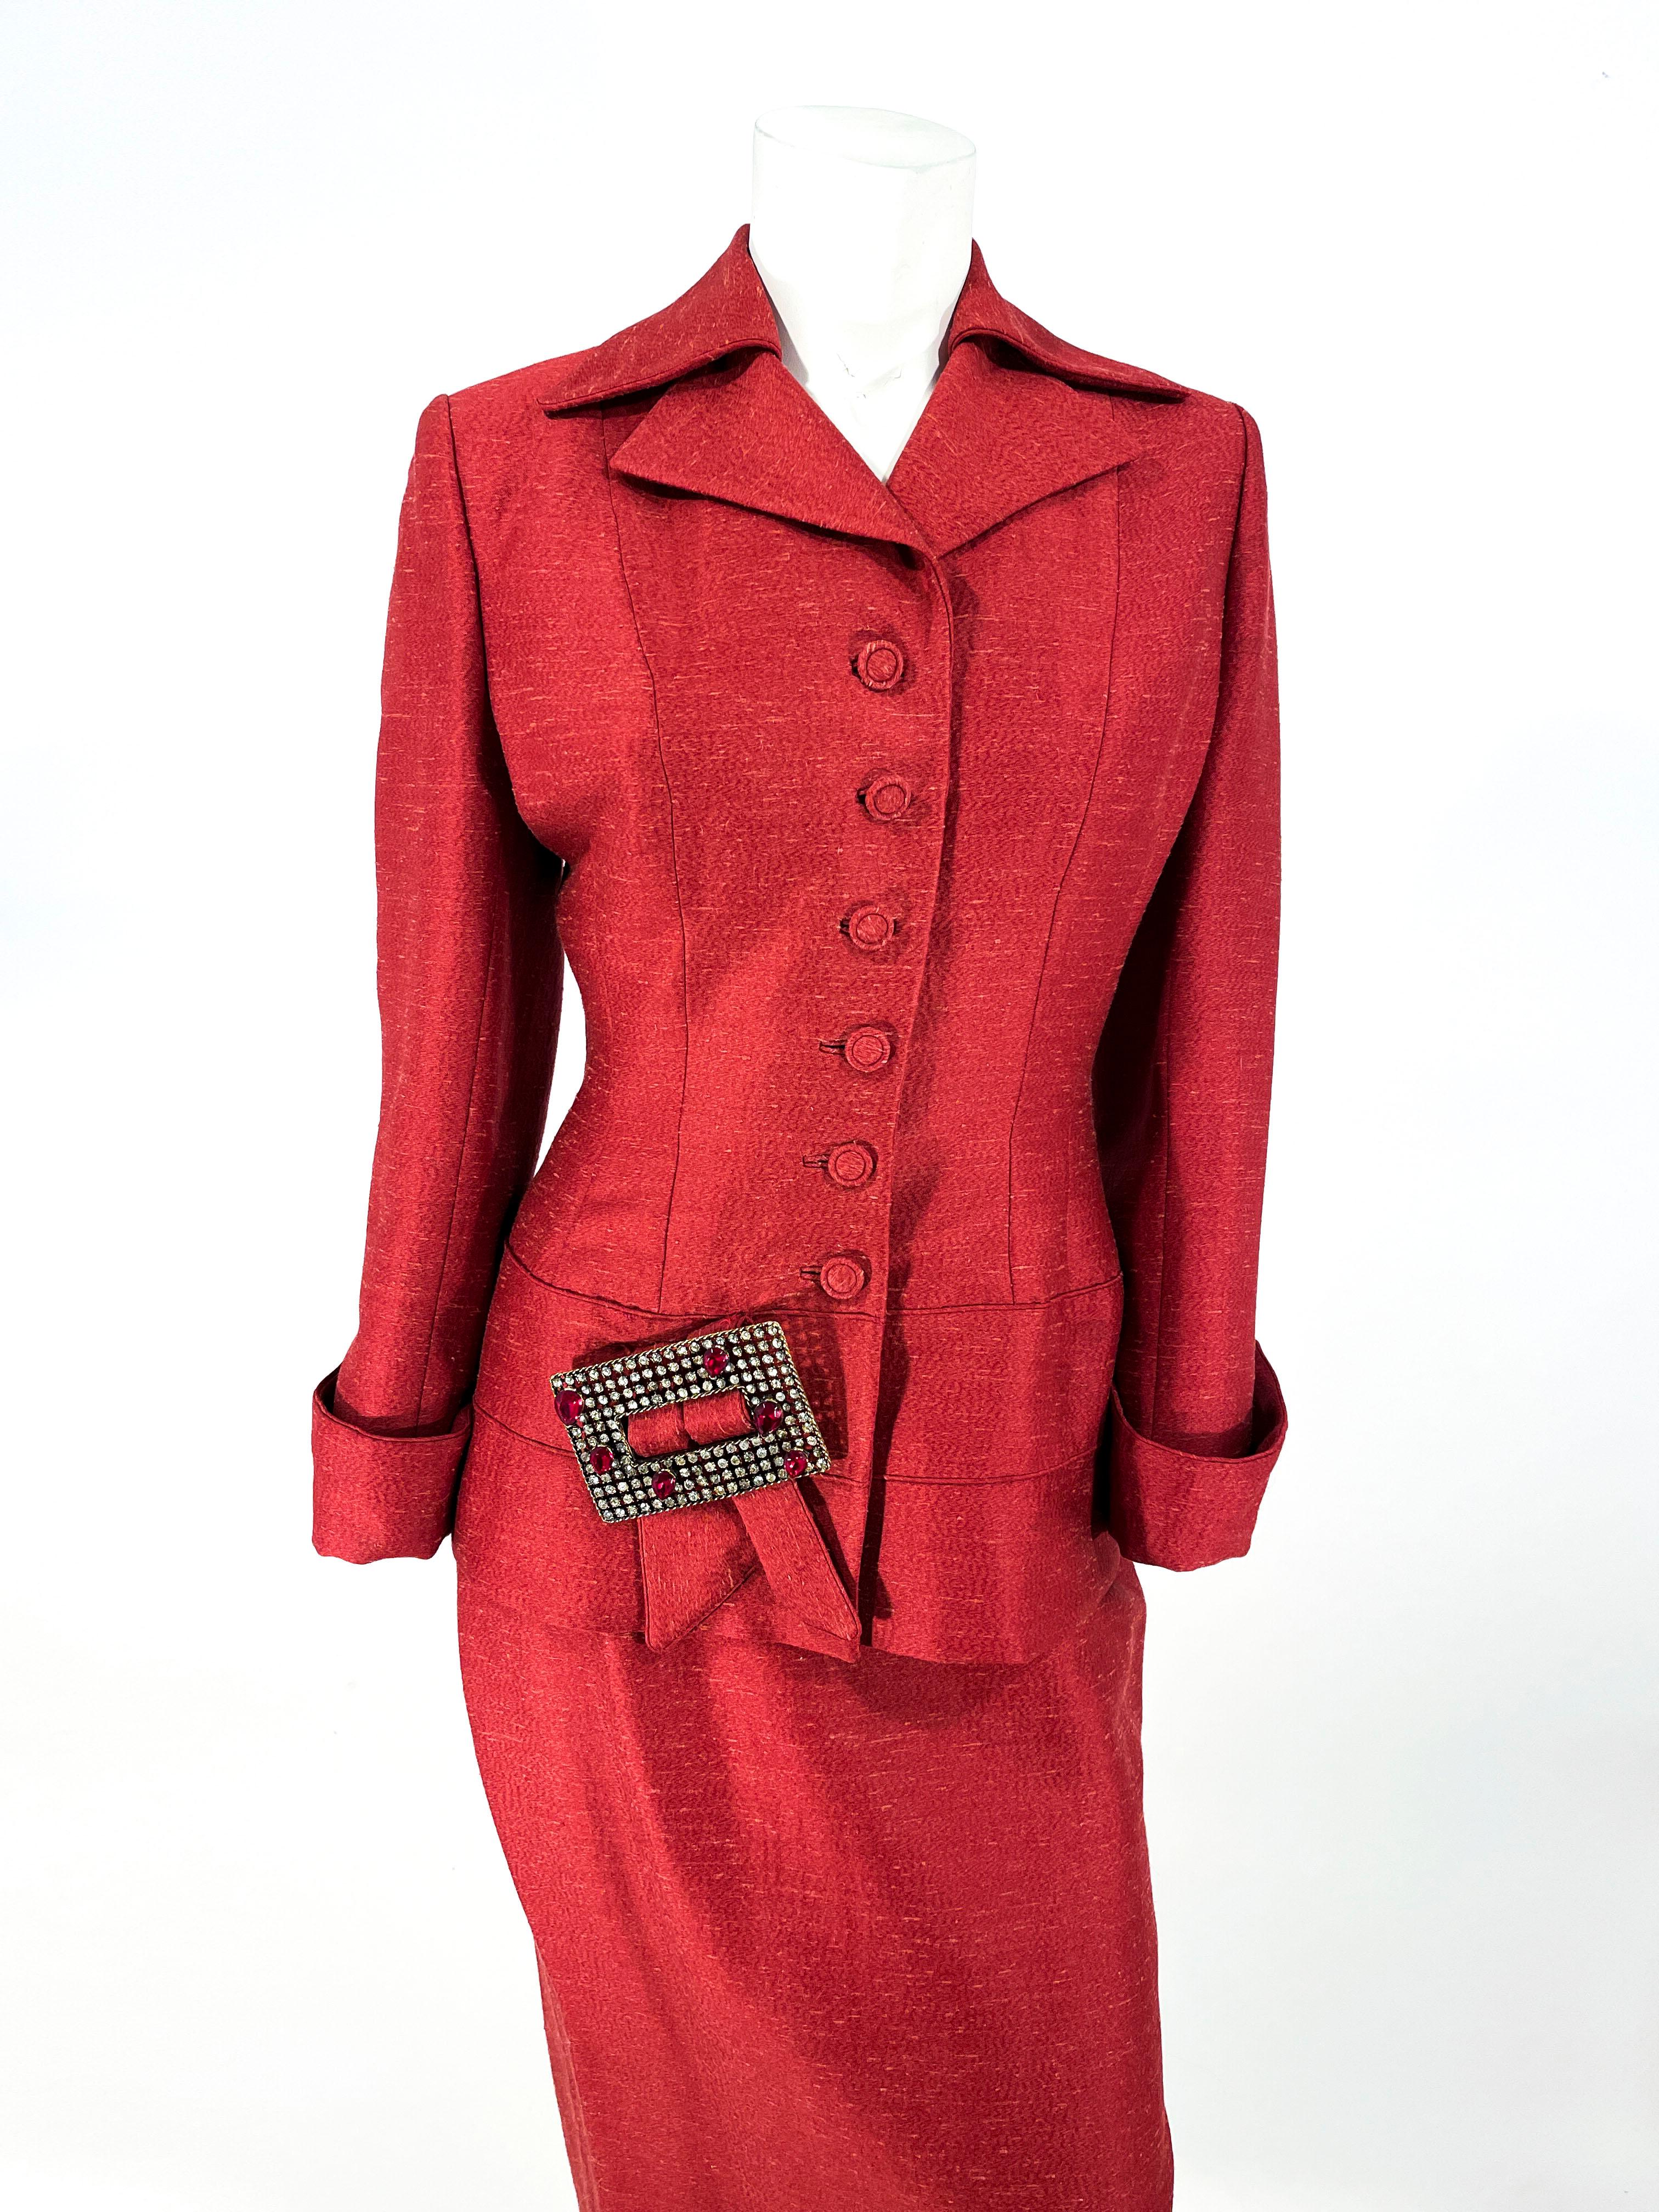 Roter Lilli Ann-Anzug aus Wolle und Seide aus den 1950er Jahren mit Rock. Die Anzugsjacke hat einen scharfen Kragen, ein gekerbtes Revers, verdeckte Designerknöpfe, eingelassene Knopflöcher, eine taillierte und maßgeschneiderte Wespentaille und eine